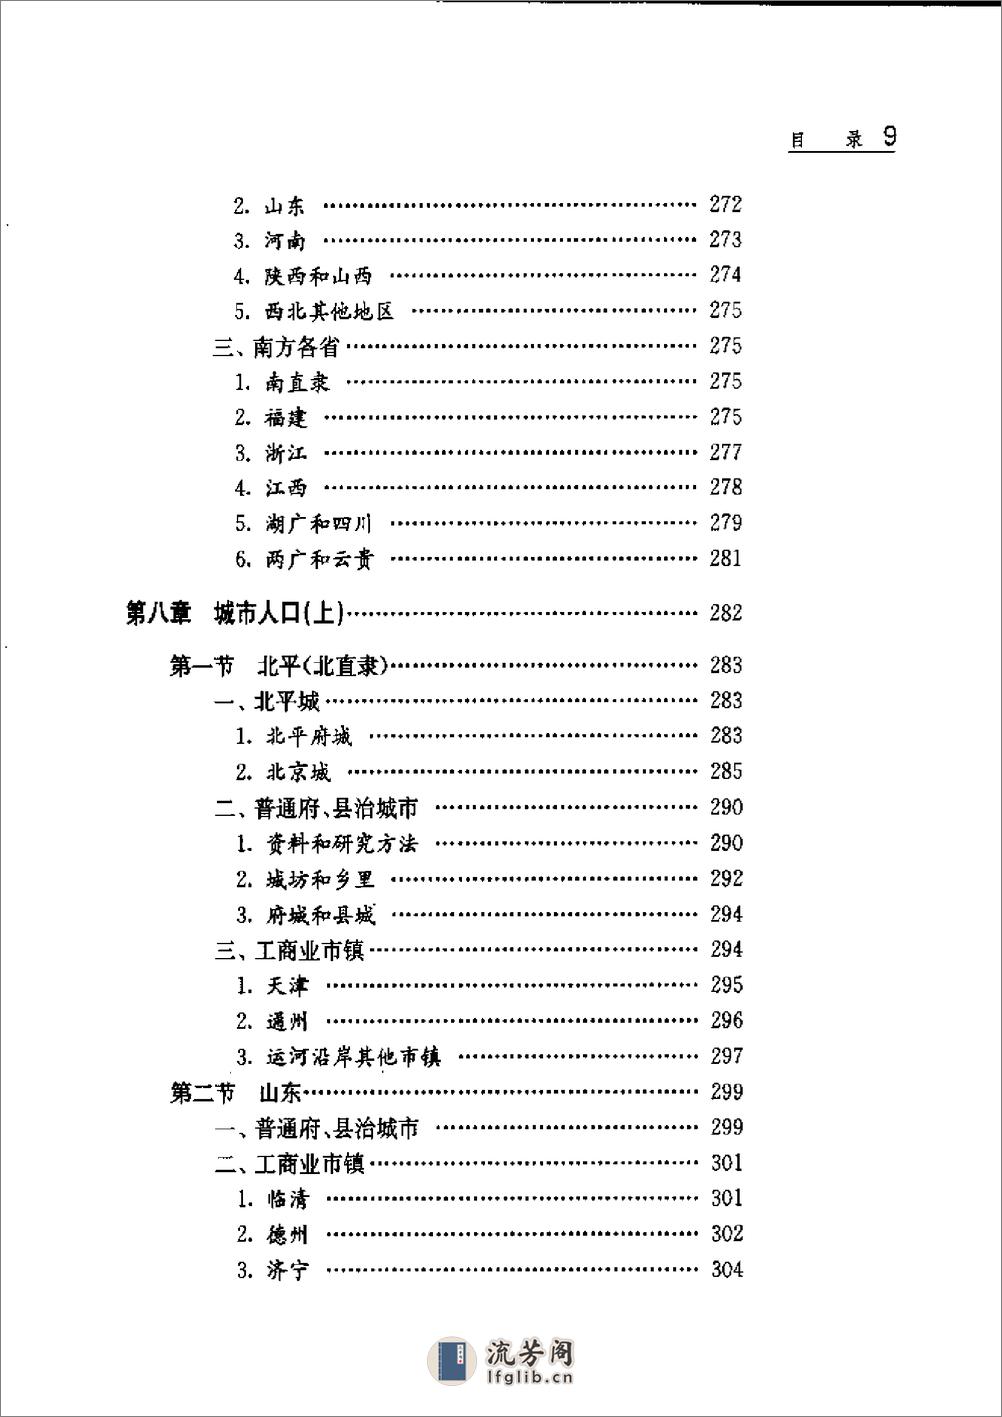 中国人口史 第4卷 明时期 - 第14页预览图